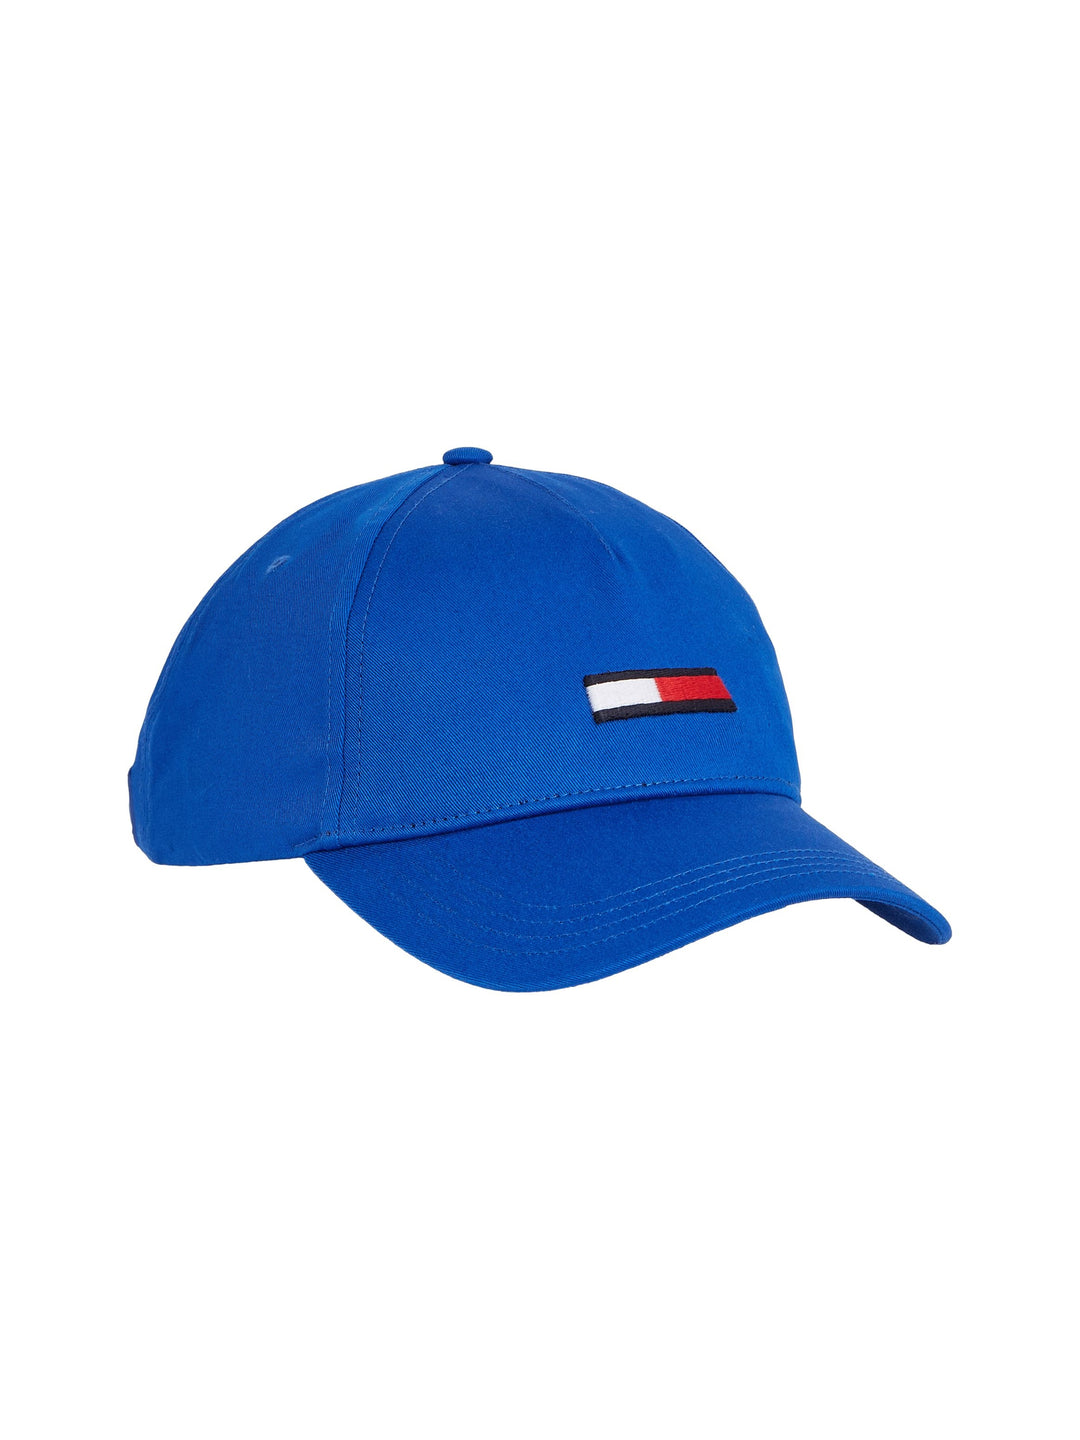 TJM FLAG CAP - ULTRA BLUE